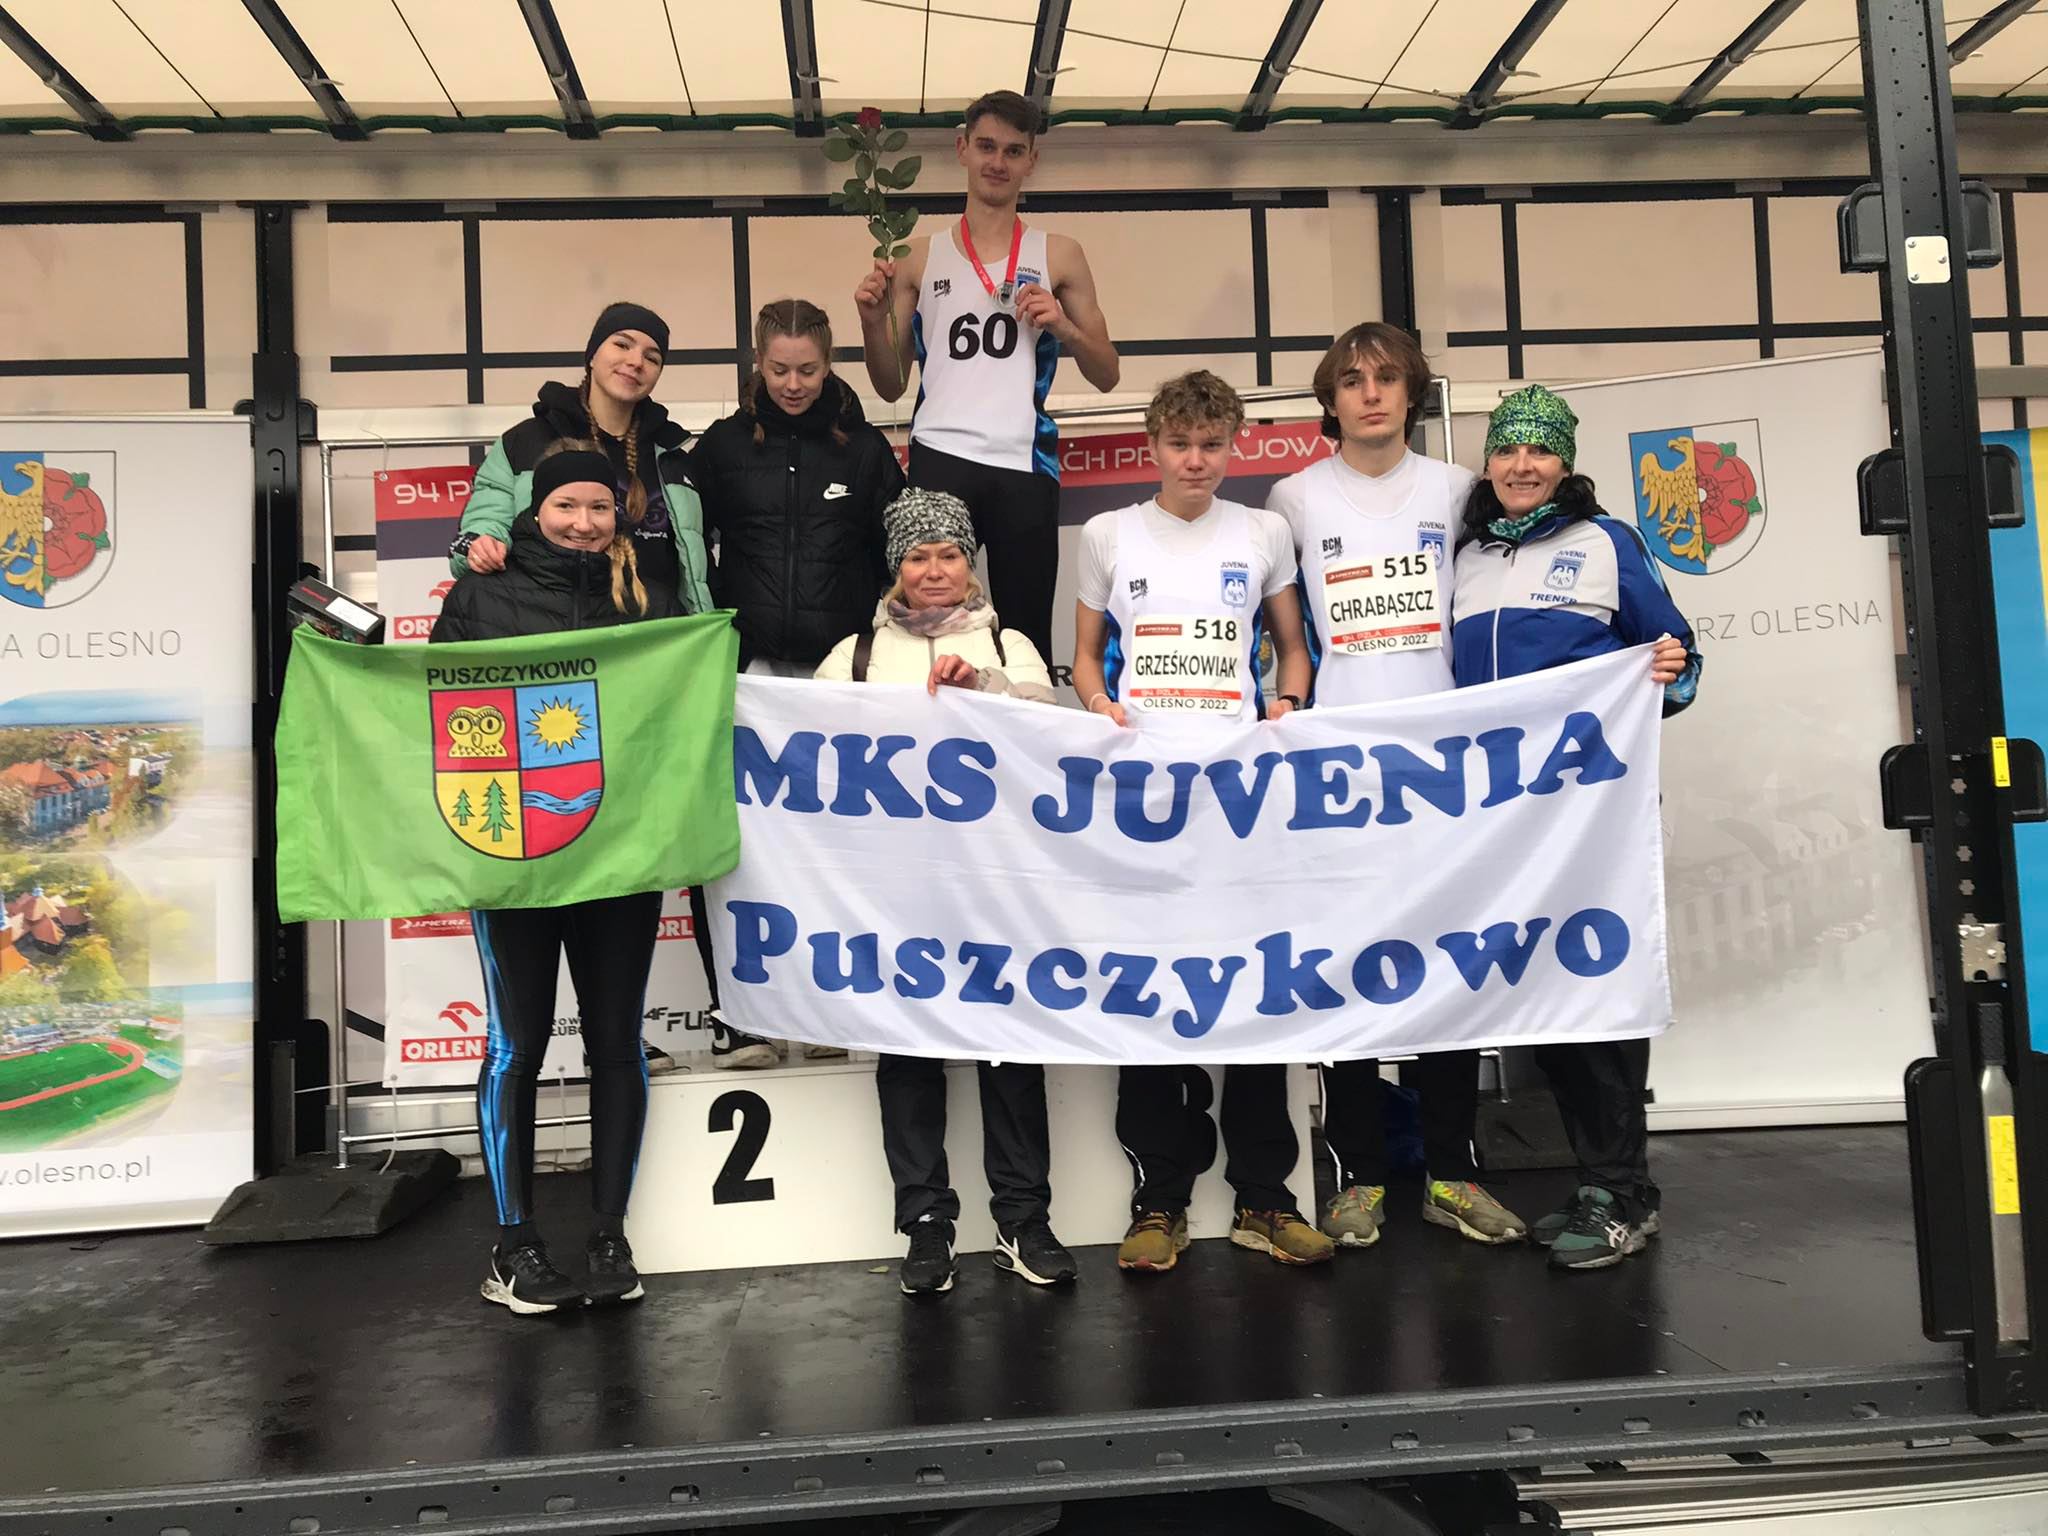 Bardzo dobry występ zanotowali reprezentanci klubu MKS Juvenia Puszczykowo na Mistrzostwach Polski w biegach przełajowych, które odbyły się w sobotę, 26 listopada br. w Oleśnie. 